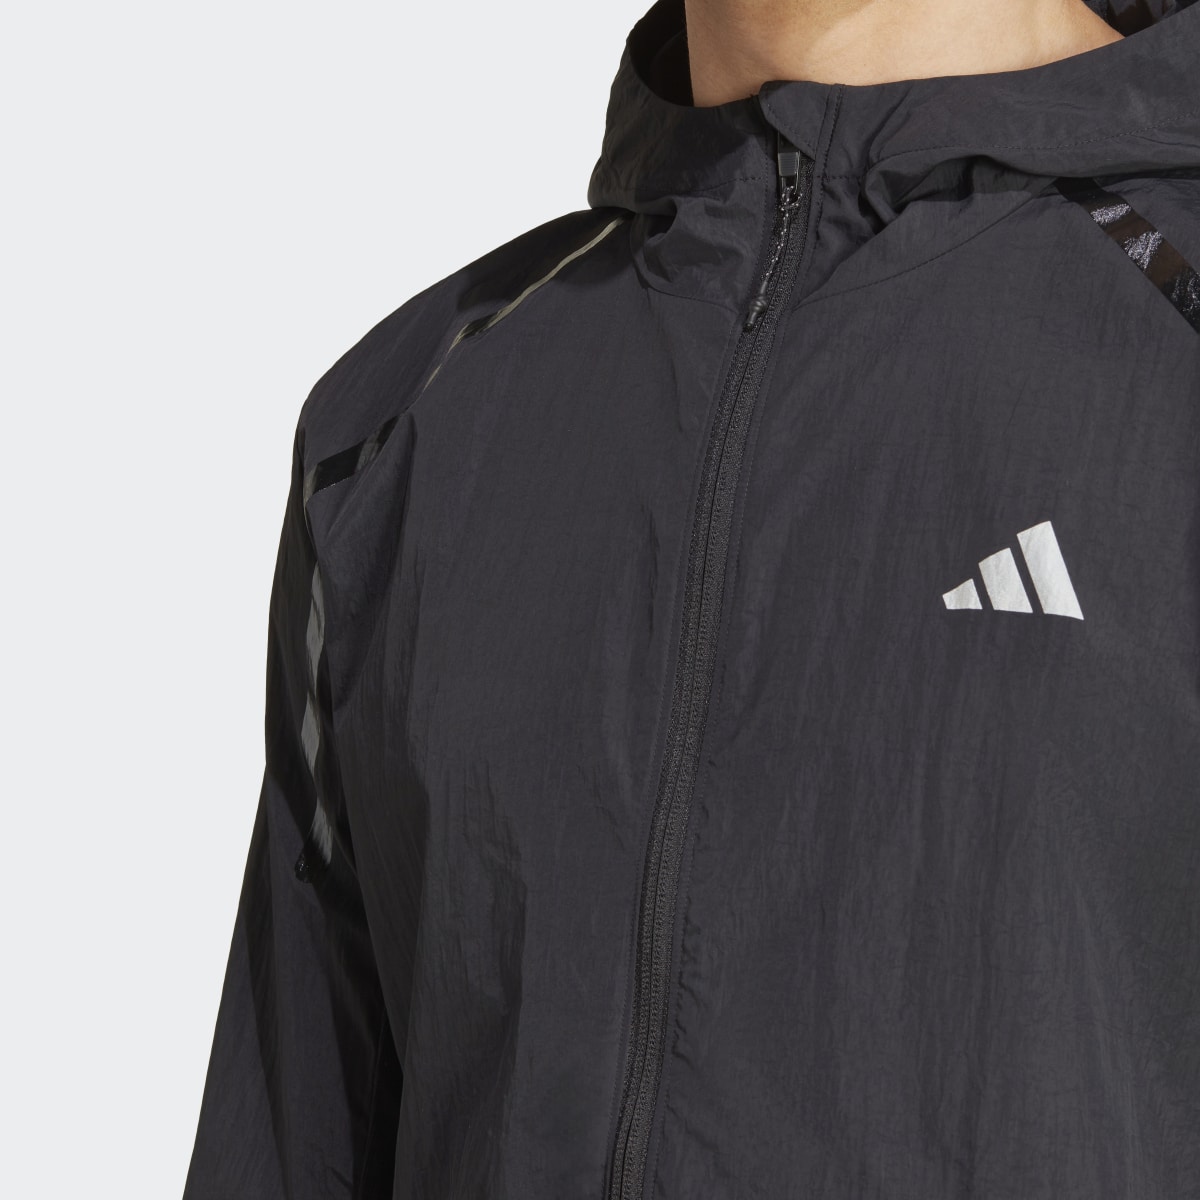 Adidas Marathon Warm-Up Jacket. 6